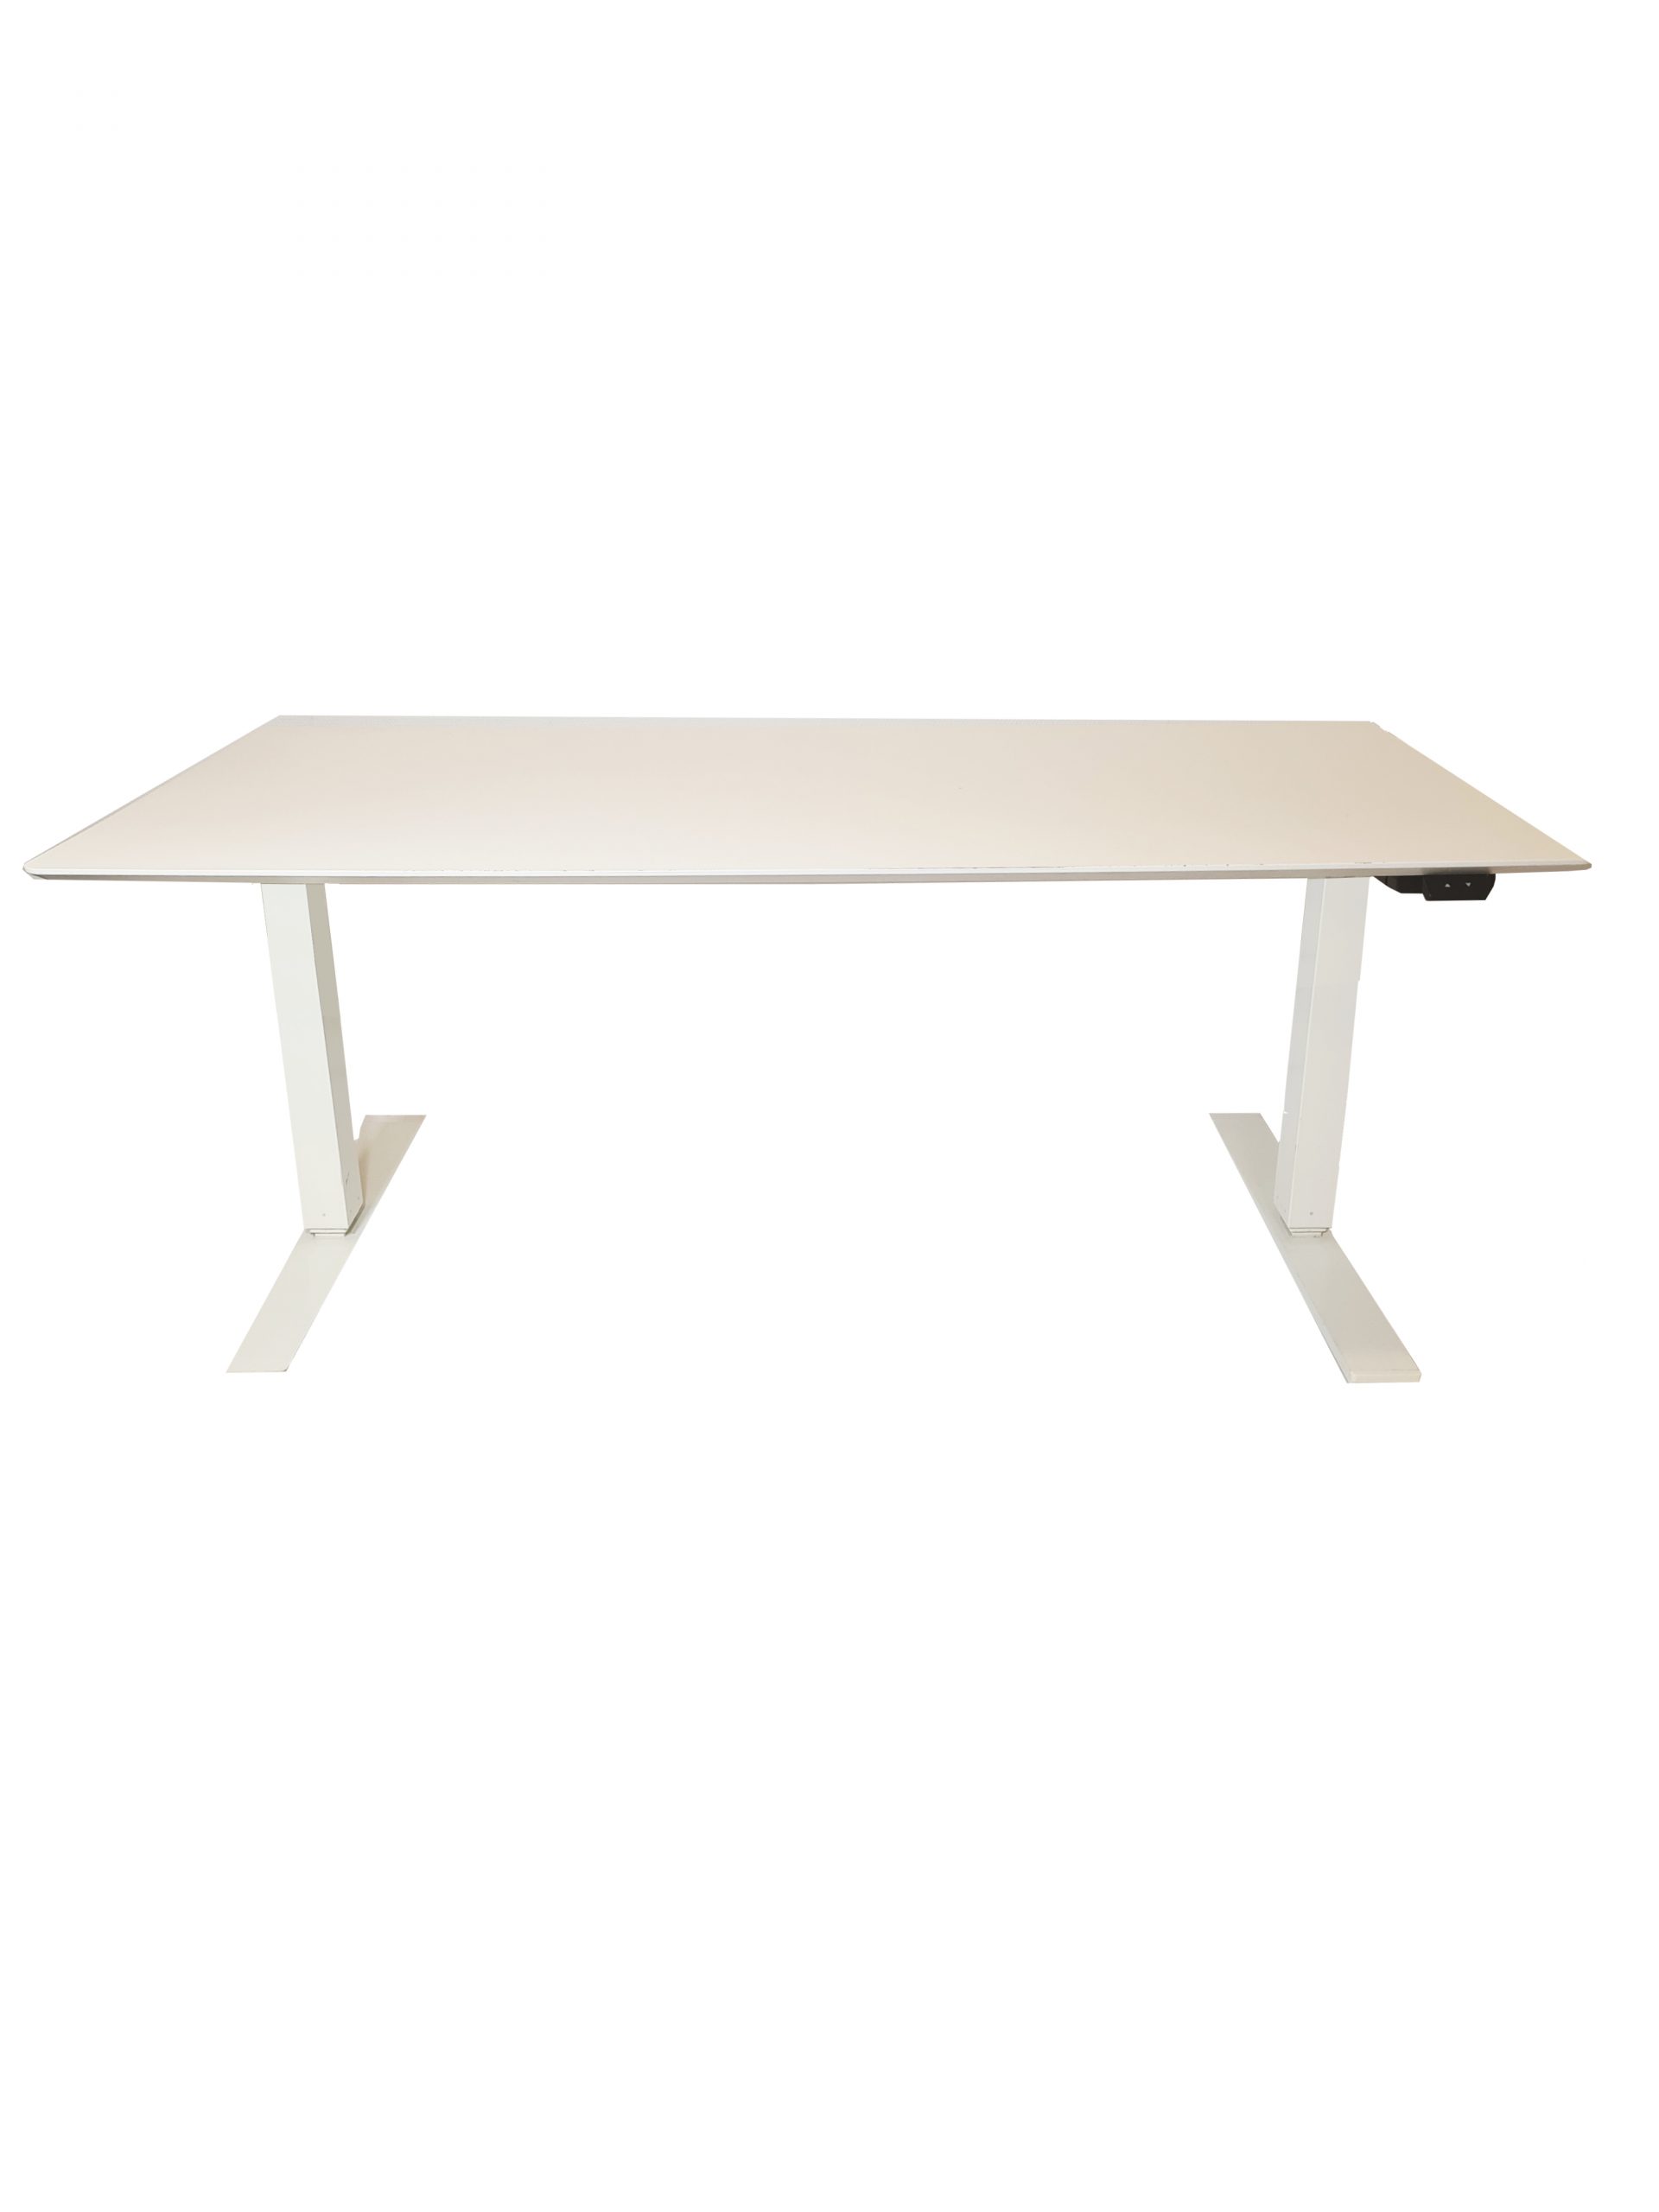 Hæve/sænke bord i x 80 cm. Hvid laminat, hvidt el-stel.